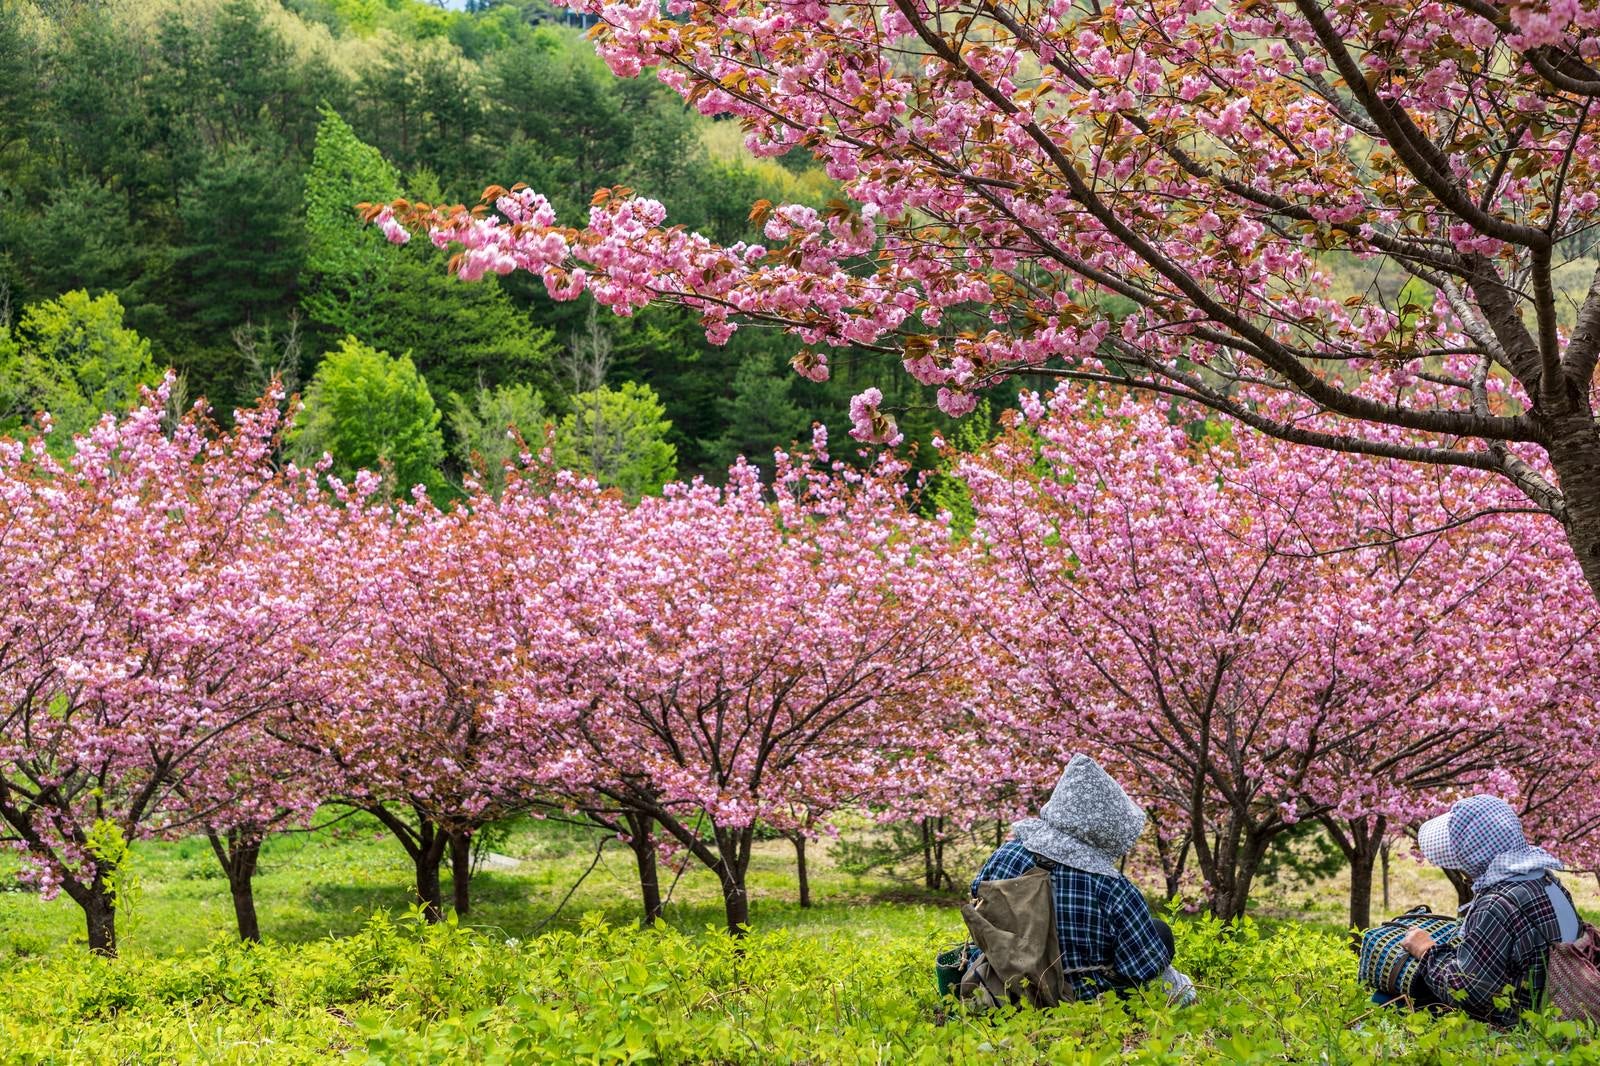 「桃源郷の八重桜を眺めて休憩する婆ちゃんたち」の写真